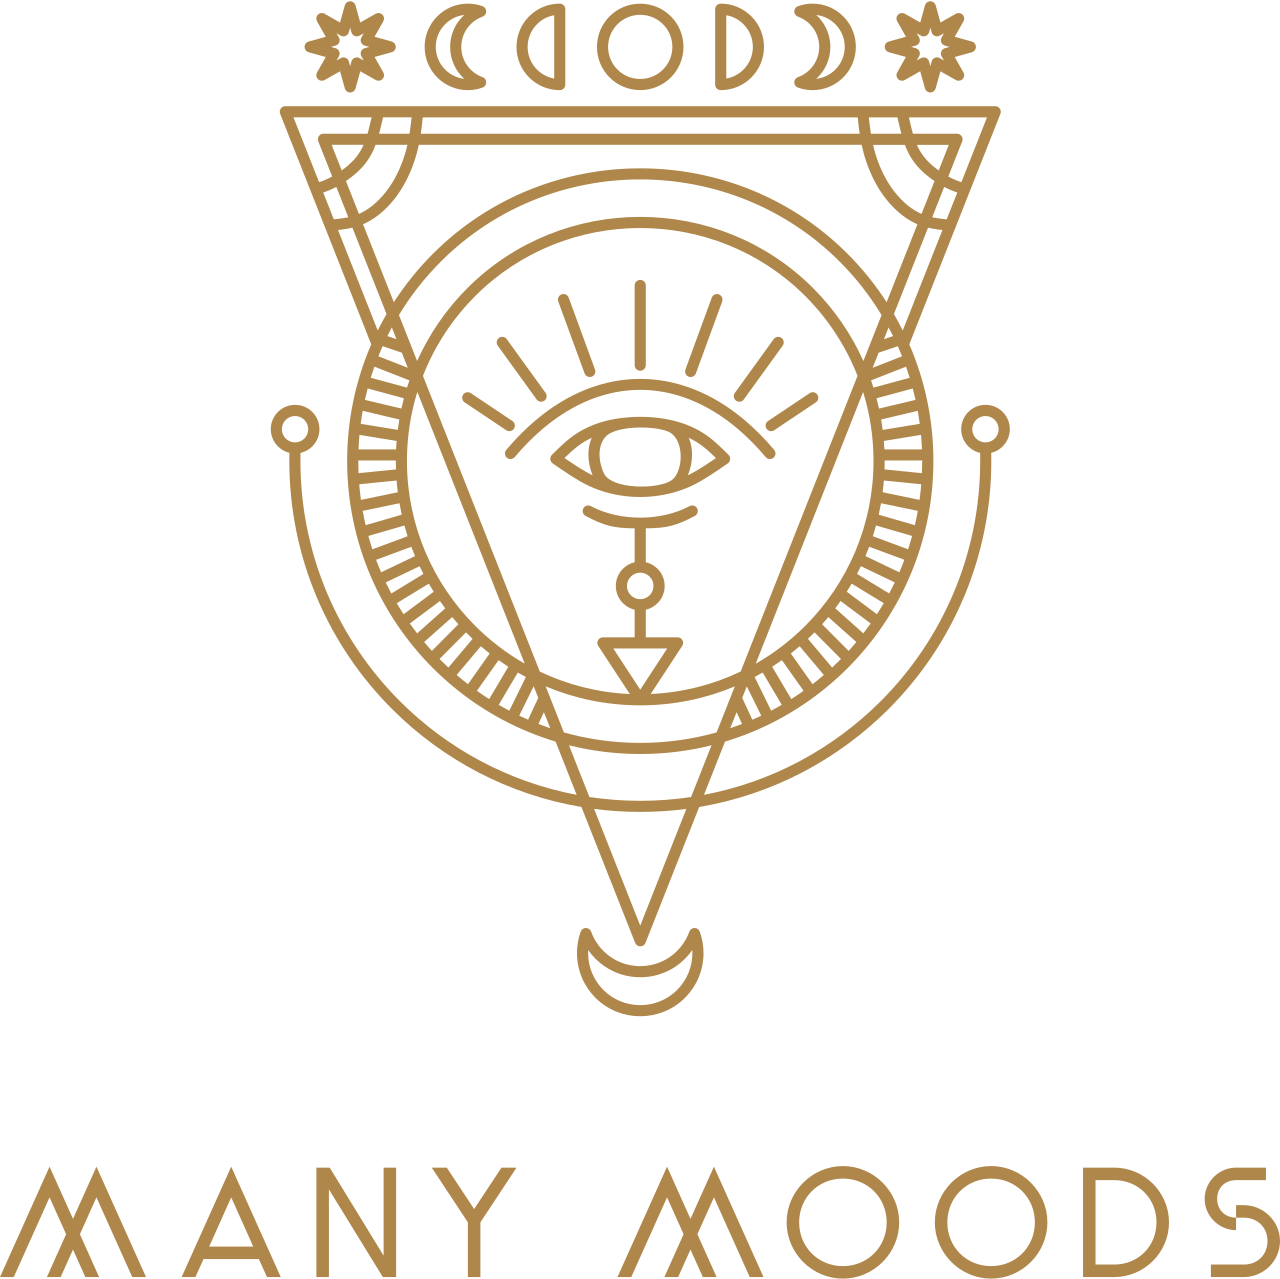 Many Moods's logo